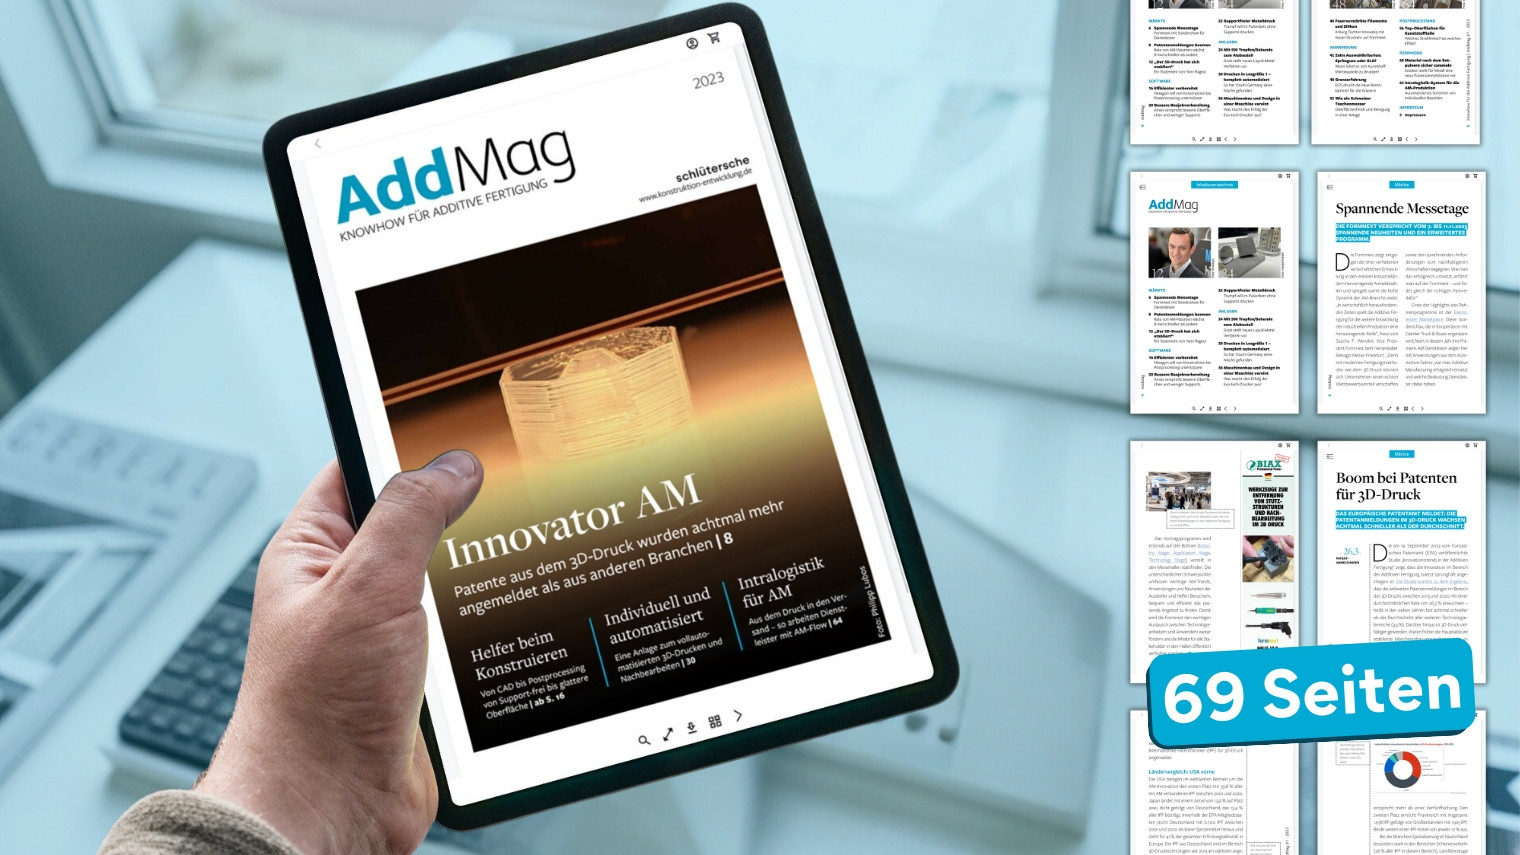 Die neue Ausgabe von AddMag im Vorfeld der Formnext 2023 liefert spannende Einblicke in die Additive Fertigung – von Konstruktion bis Postprocessing.
